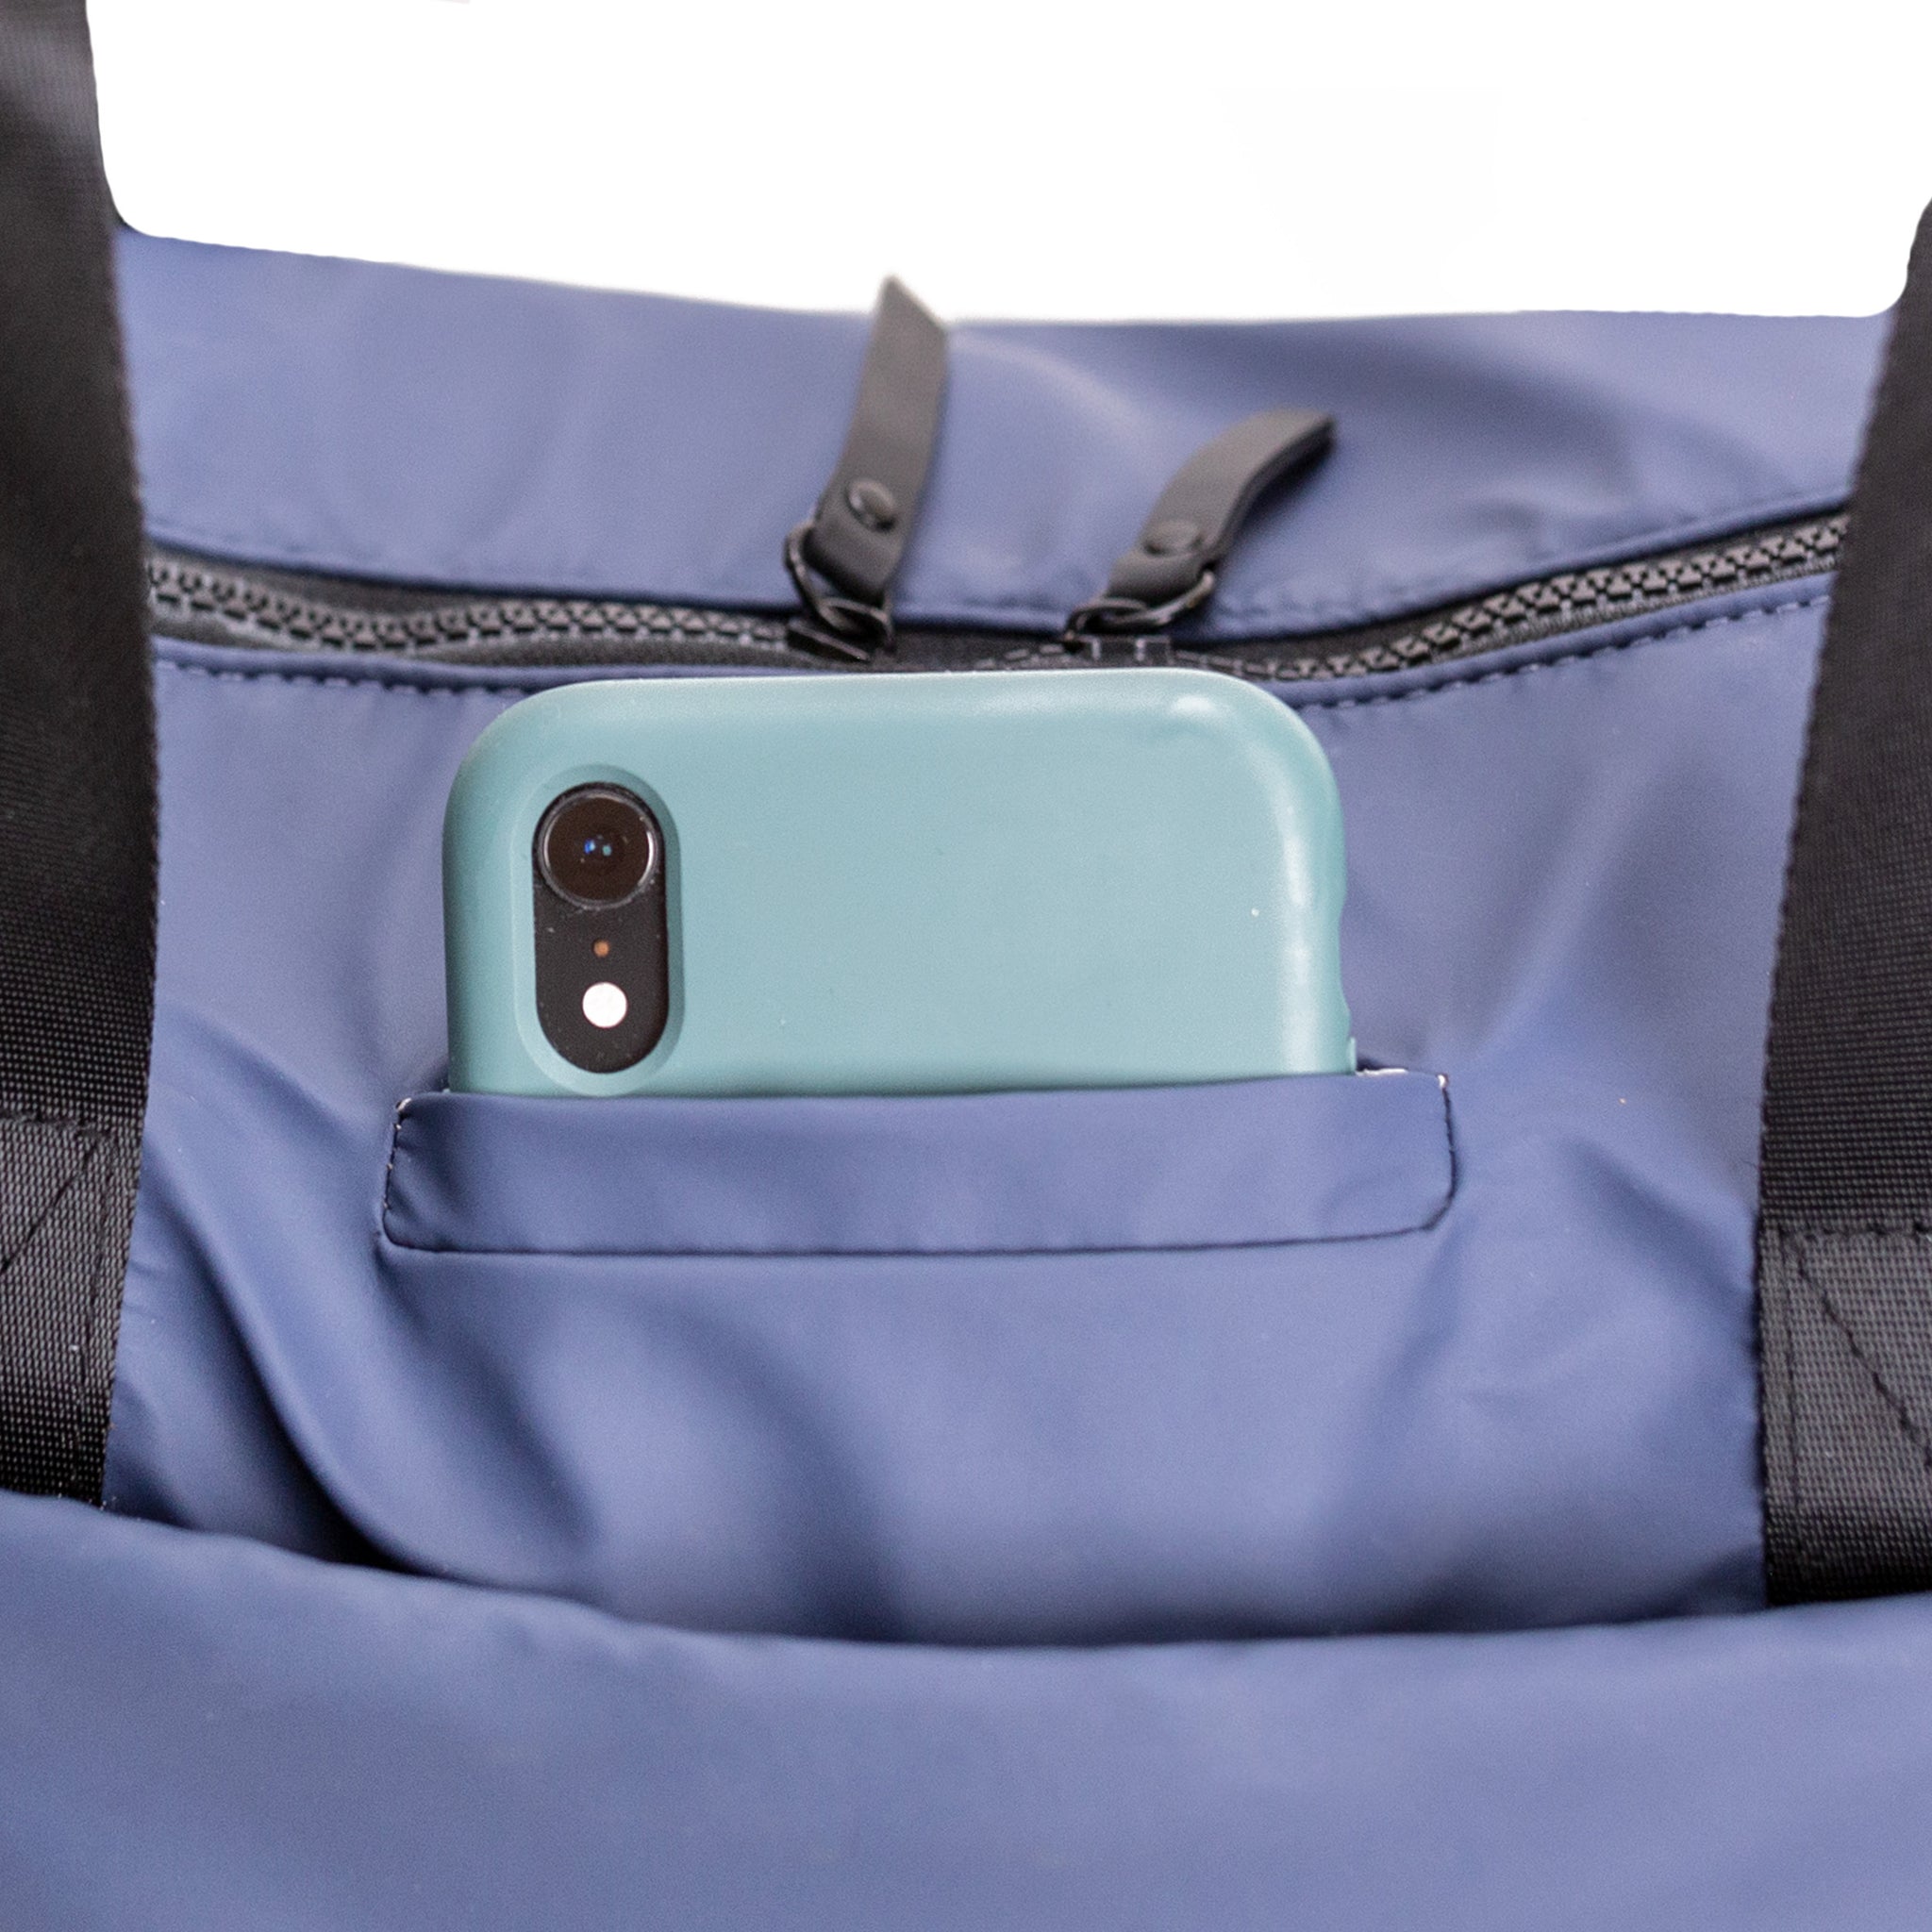 Vooray - Sac de voyage et sac de sport avec pochette pour ordinateur portable, poche pour chaussures et poche sèche